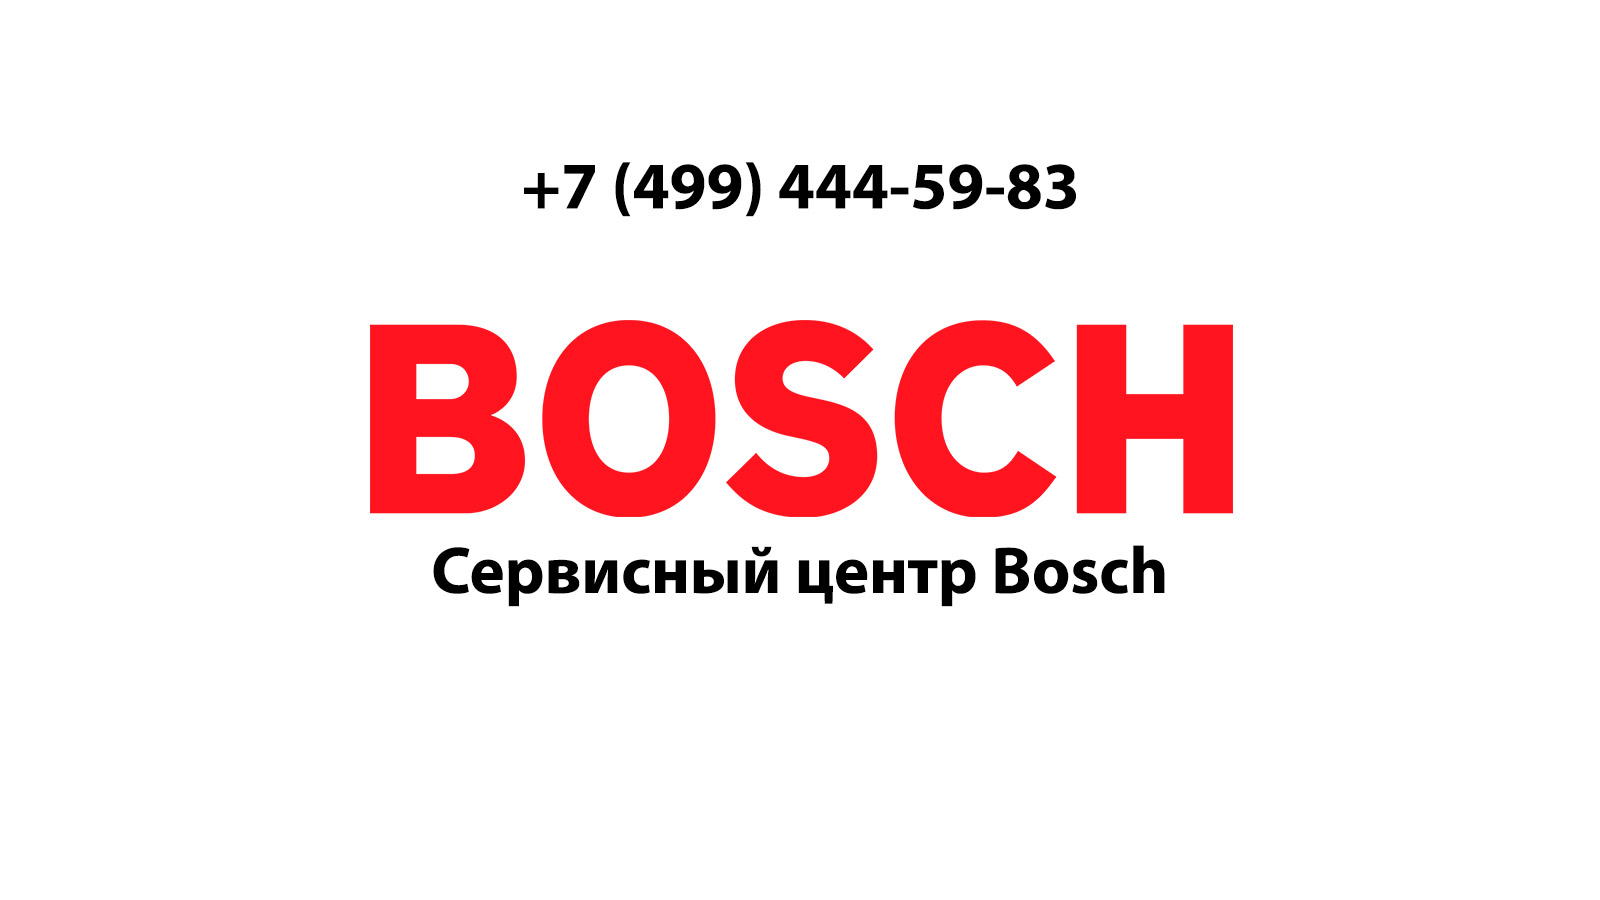 Bosch в москве